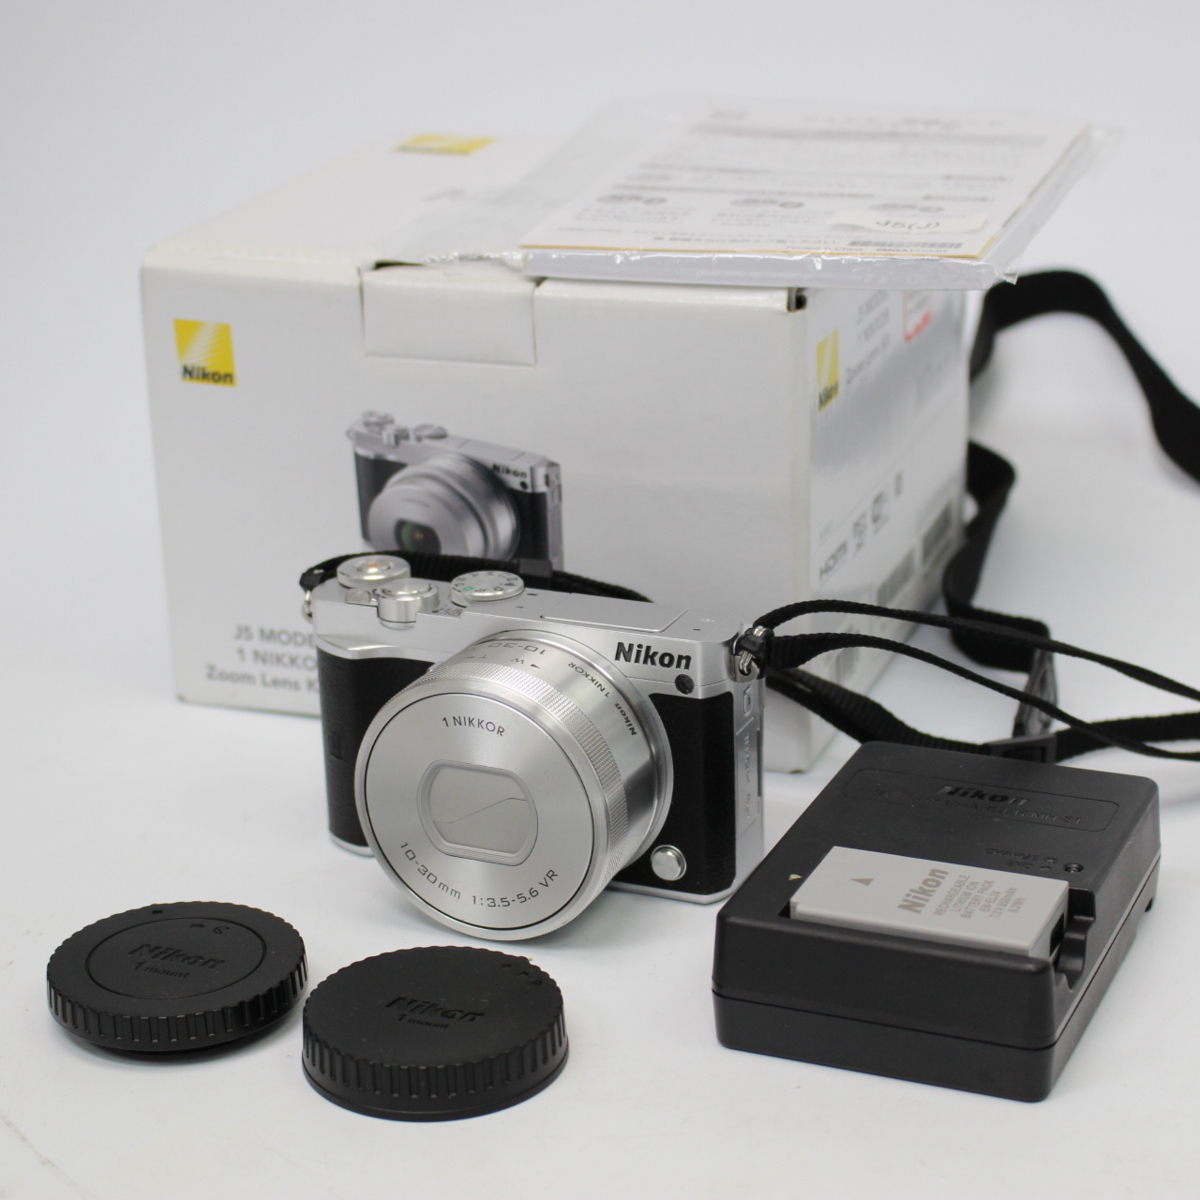 ニコン 1 J5 ミラーレスカメラ レンズセット 1NIKKOR 10-30mm 1:3.5-5.6 VR 箱付き ニコン デジカメ ミラレス一眼